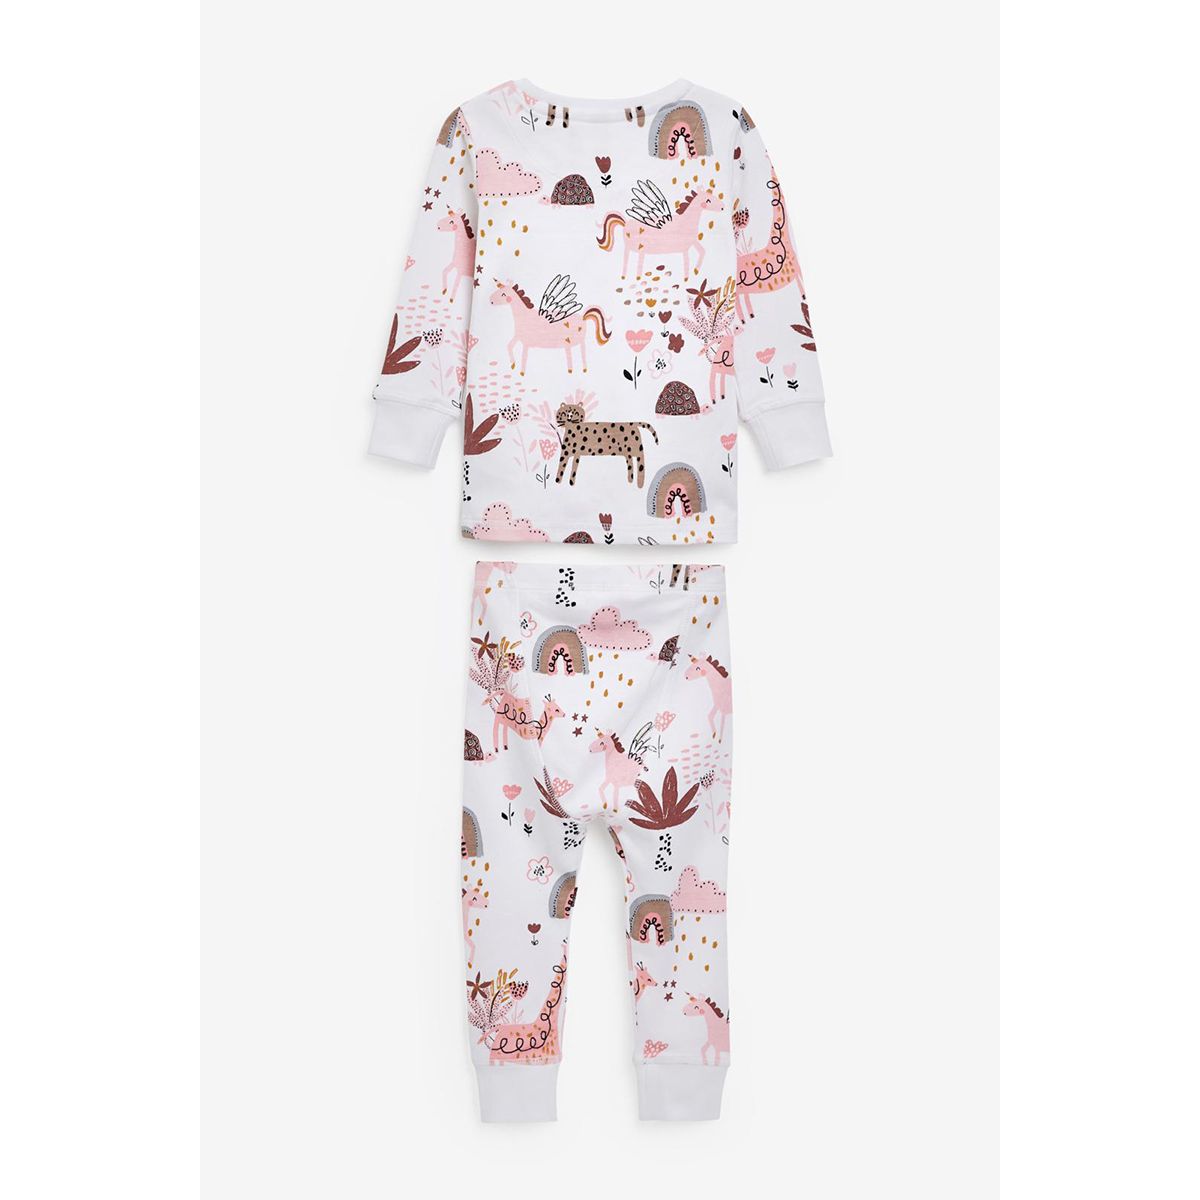 OPAWO Lot de 3 pyjamas bébé en coton à manches longues pour garçon fille Imprimé une pièce Pieds-pyjama Barboteuse Automne Hiver 0-12 mois 